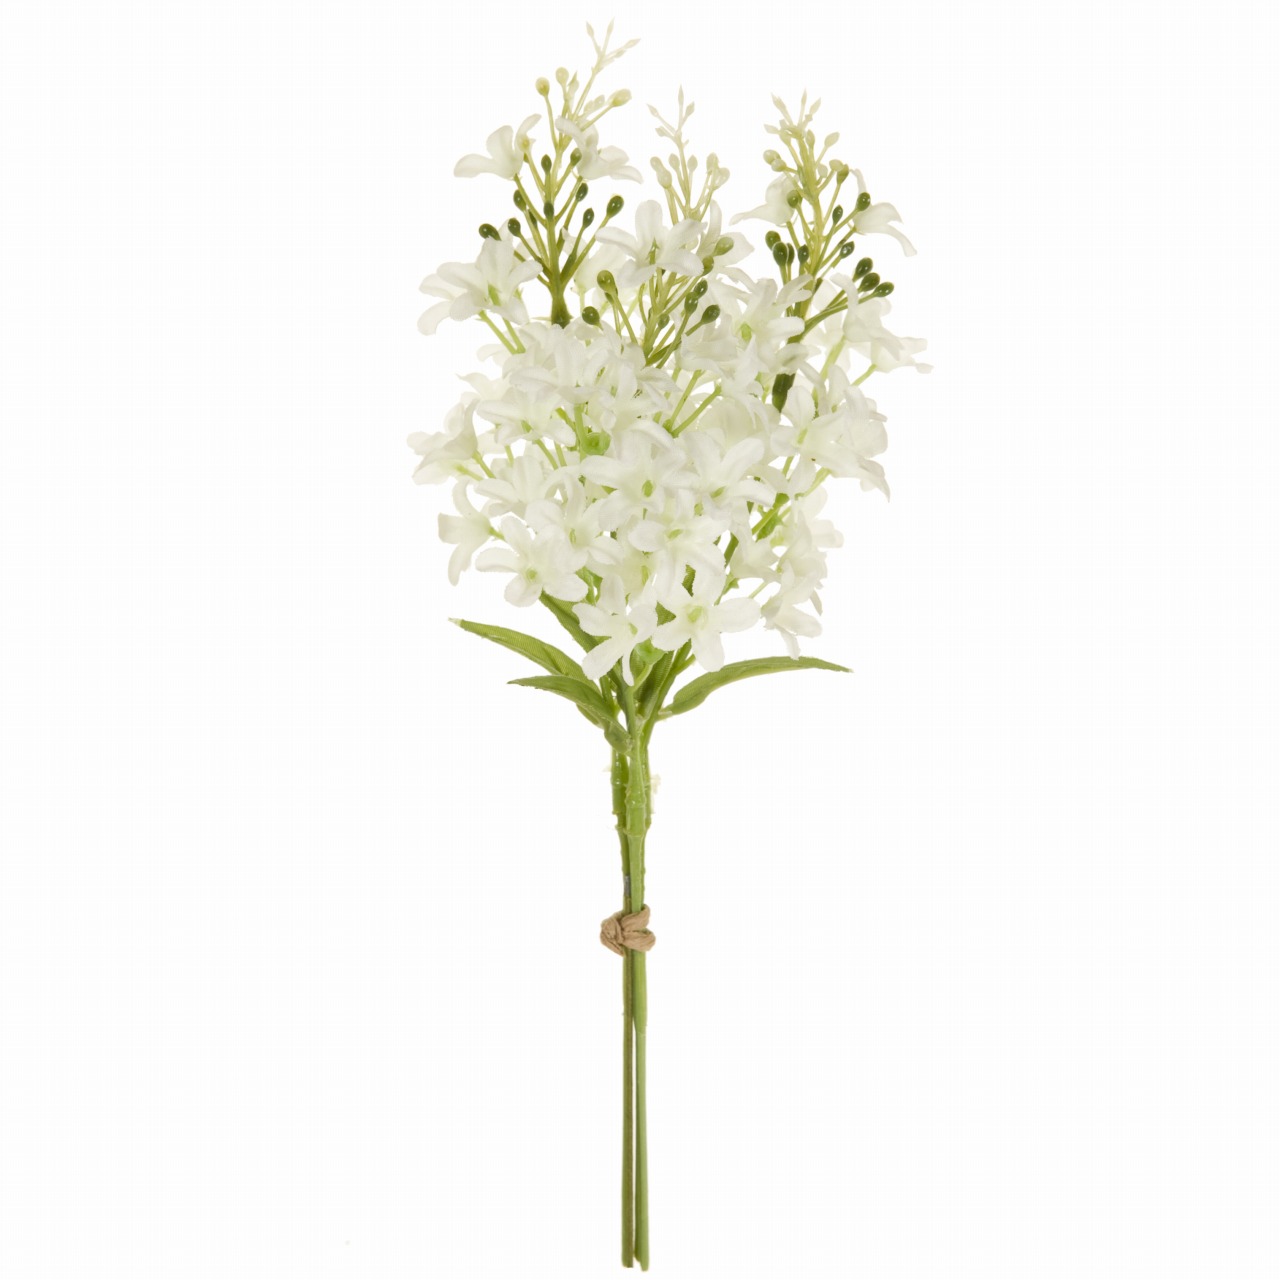 マイフラ 通販 Magiq マリーライラック ピック ホワイト アーティフィシャルフラワー 造花 Fm0094 001 1束 ライラック ホワイト Magiq アーティフィシャルフラワー 造花 全国にmagiq 花器 花資材などをお届けします